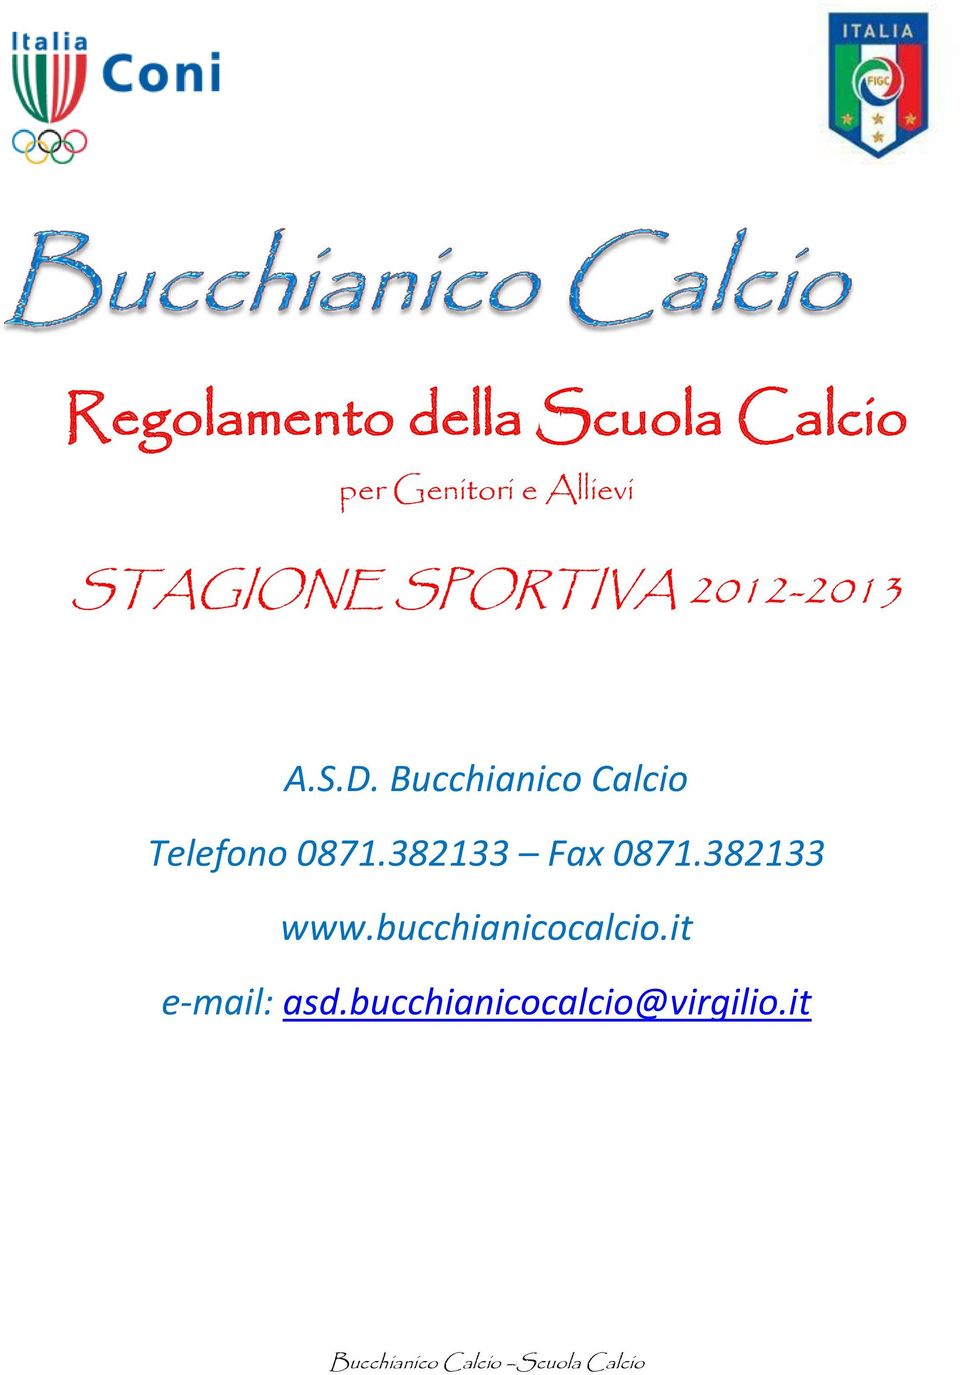 Bucchianico Calcio Telefono 0871.382133 Fax 0871.